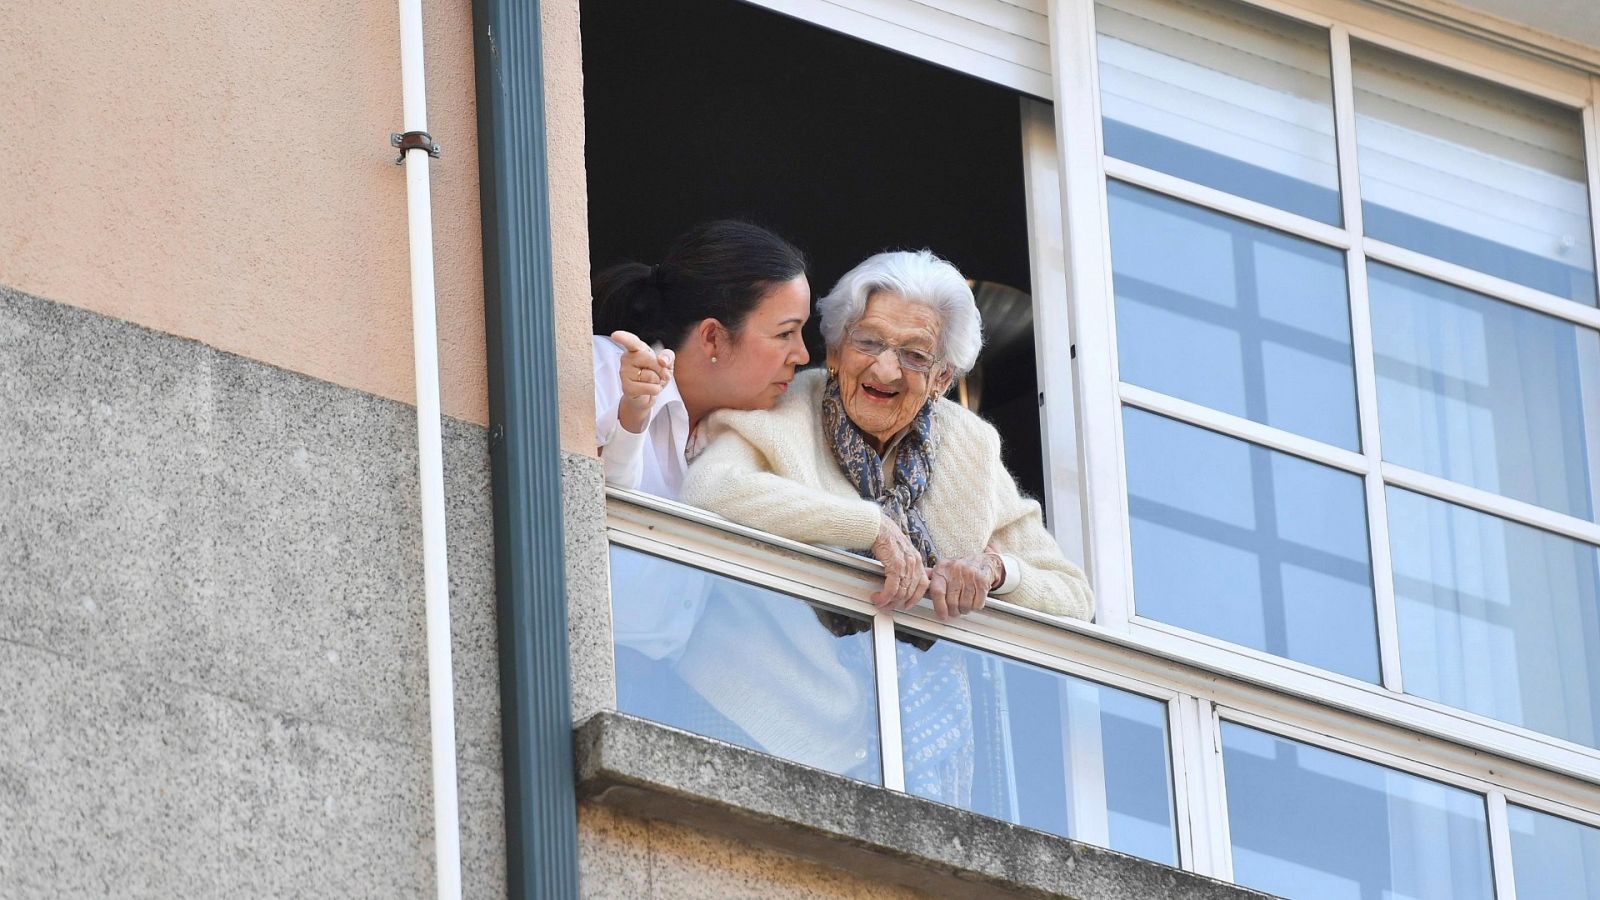 Lulú, la vecina más veterana de Pontevedra cumple 110 años confinada en su casa